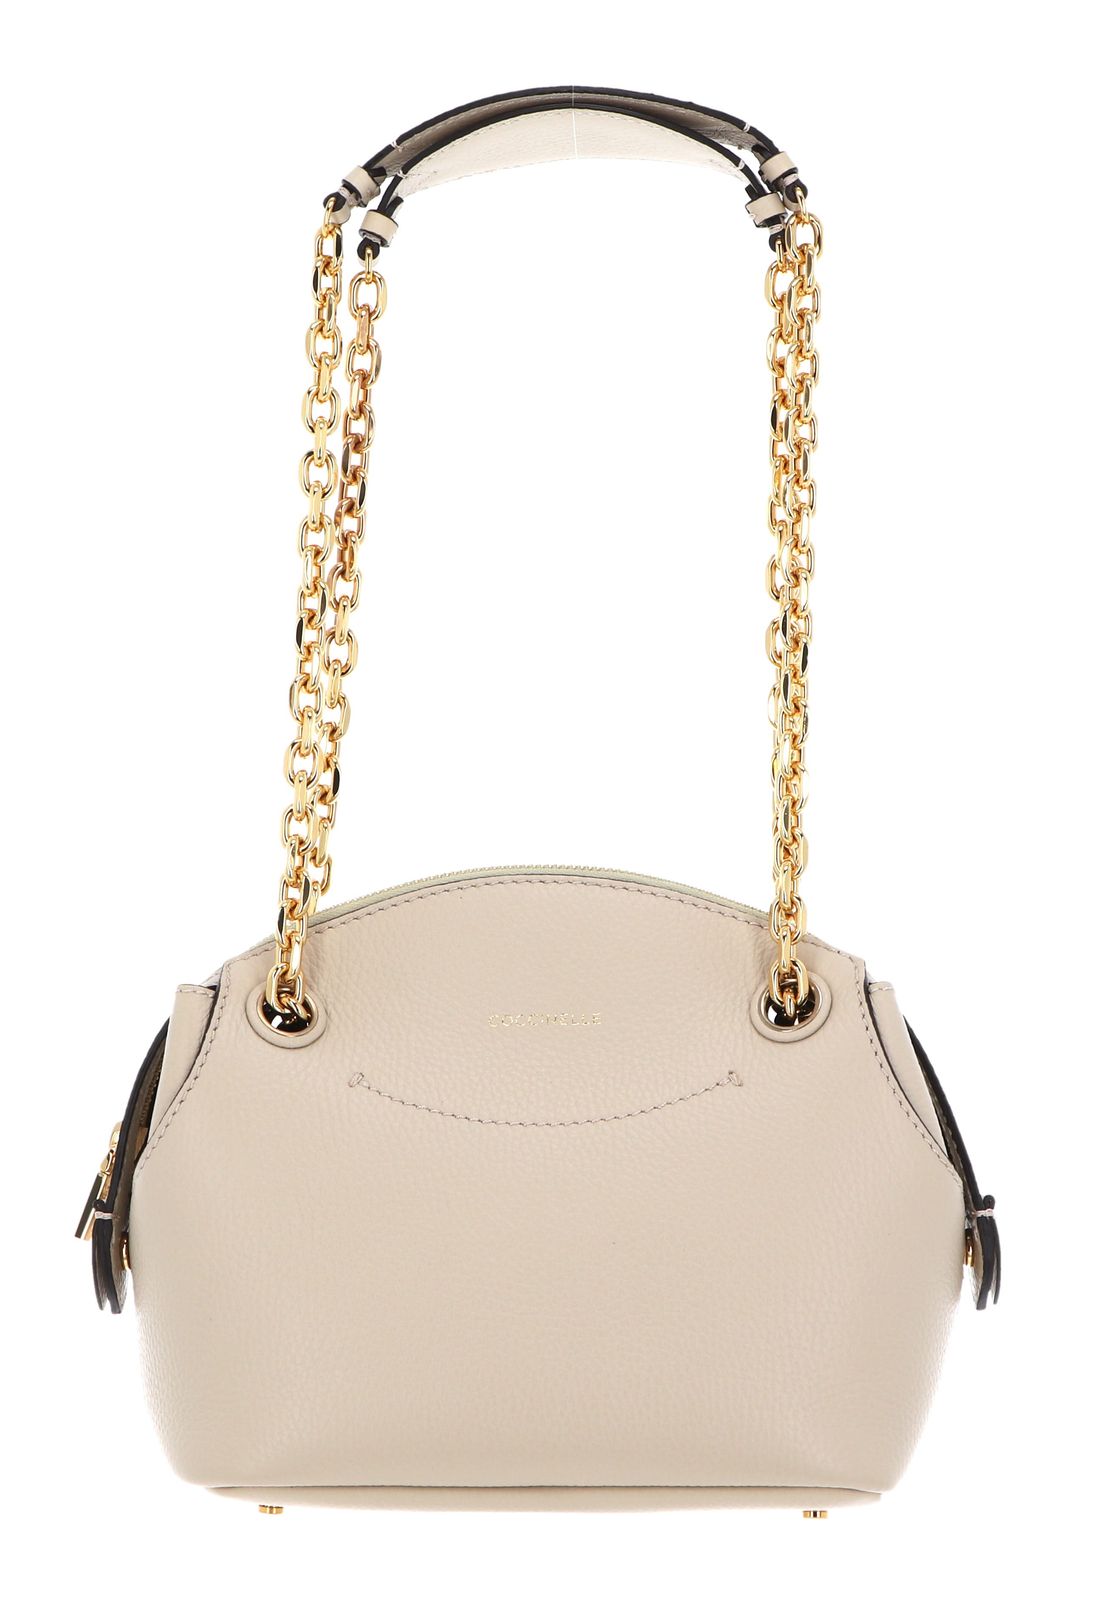 COCCINELLE Colette Handbag | Buy bags, purses & accessories online ...